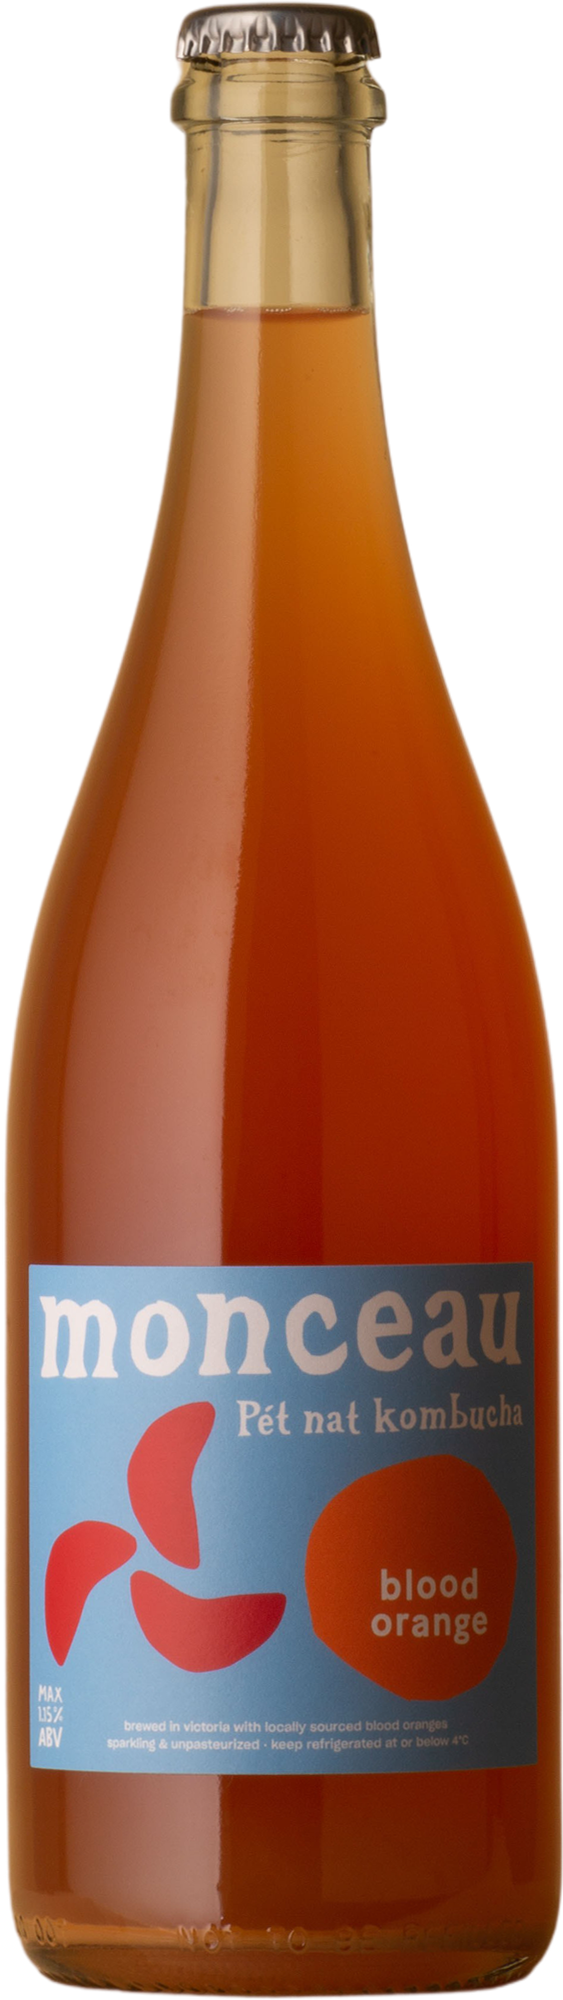 Monceau - Blood Orange Pét Nat Kombucha Not Wine